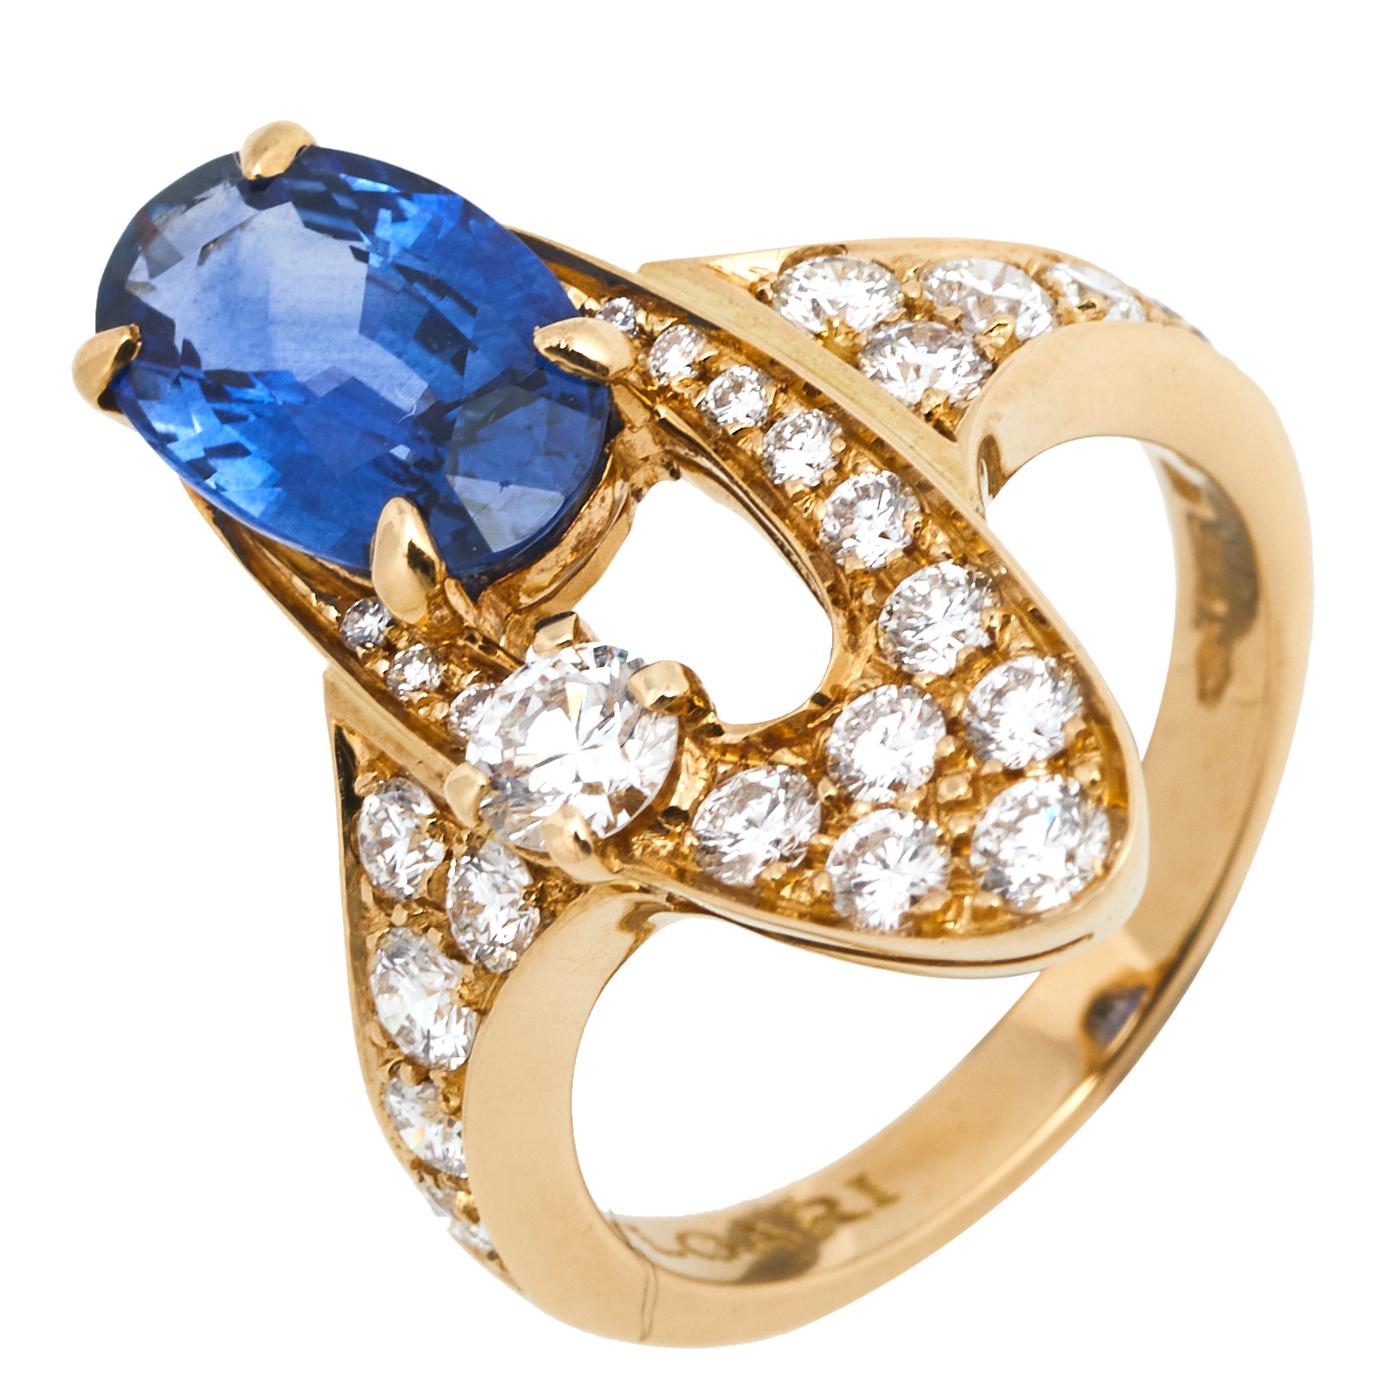 Bvlgari Elisia Sapphire and Diamond 18K Yellow Gold Ring Size 51 In Fair Condition In Dubai, Al Qouz 2